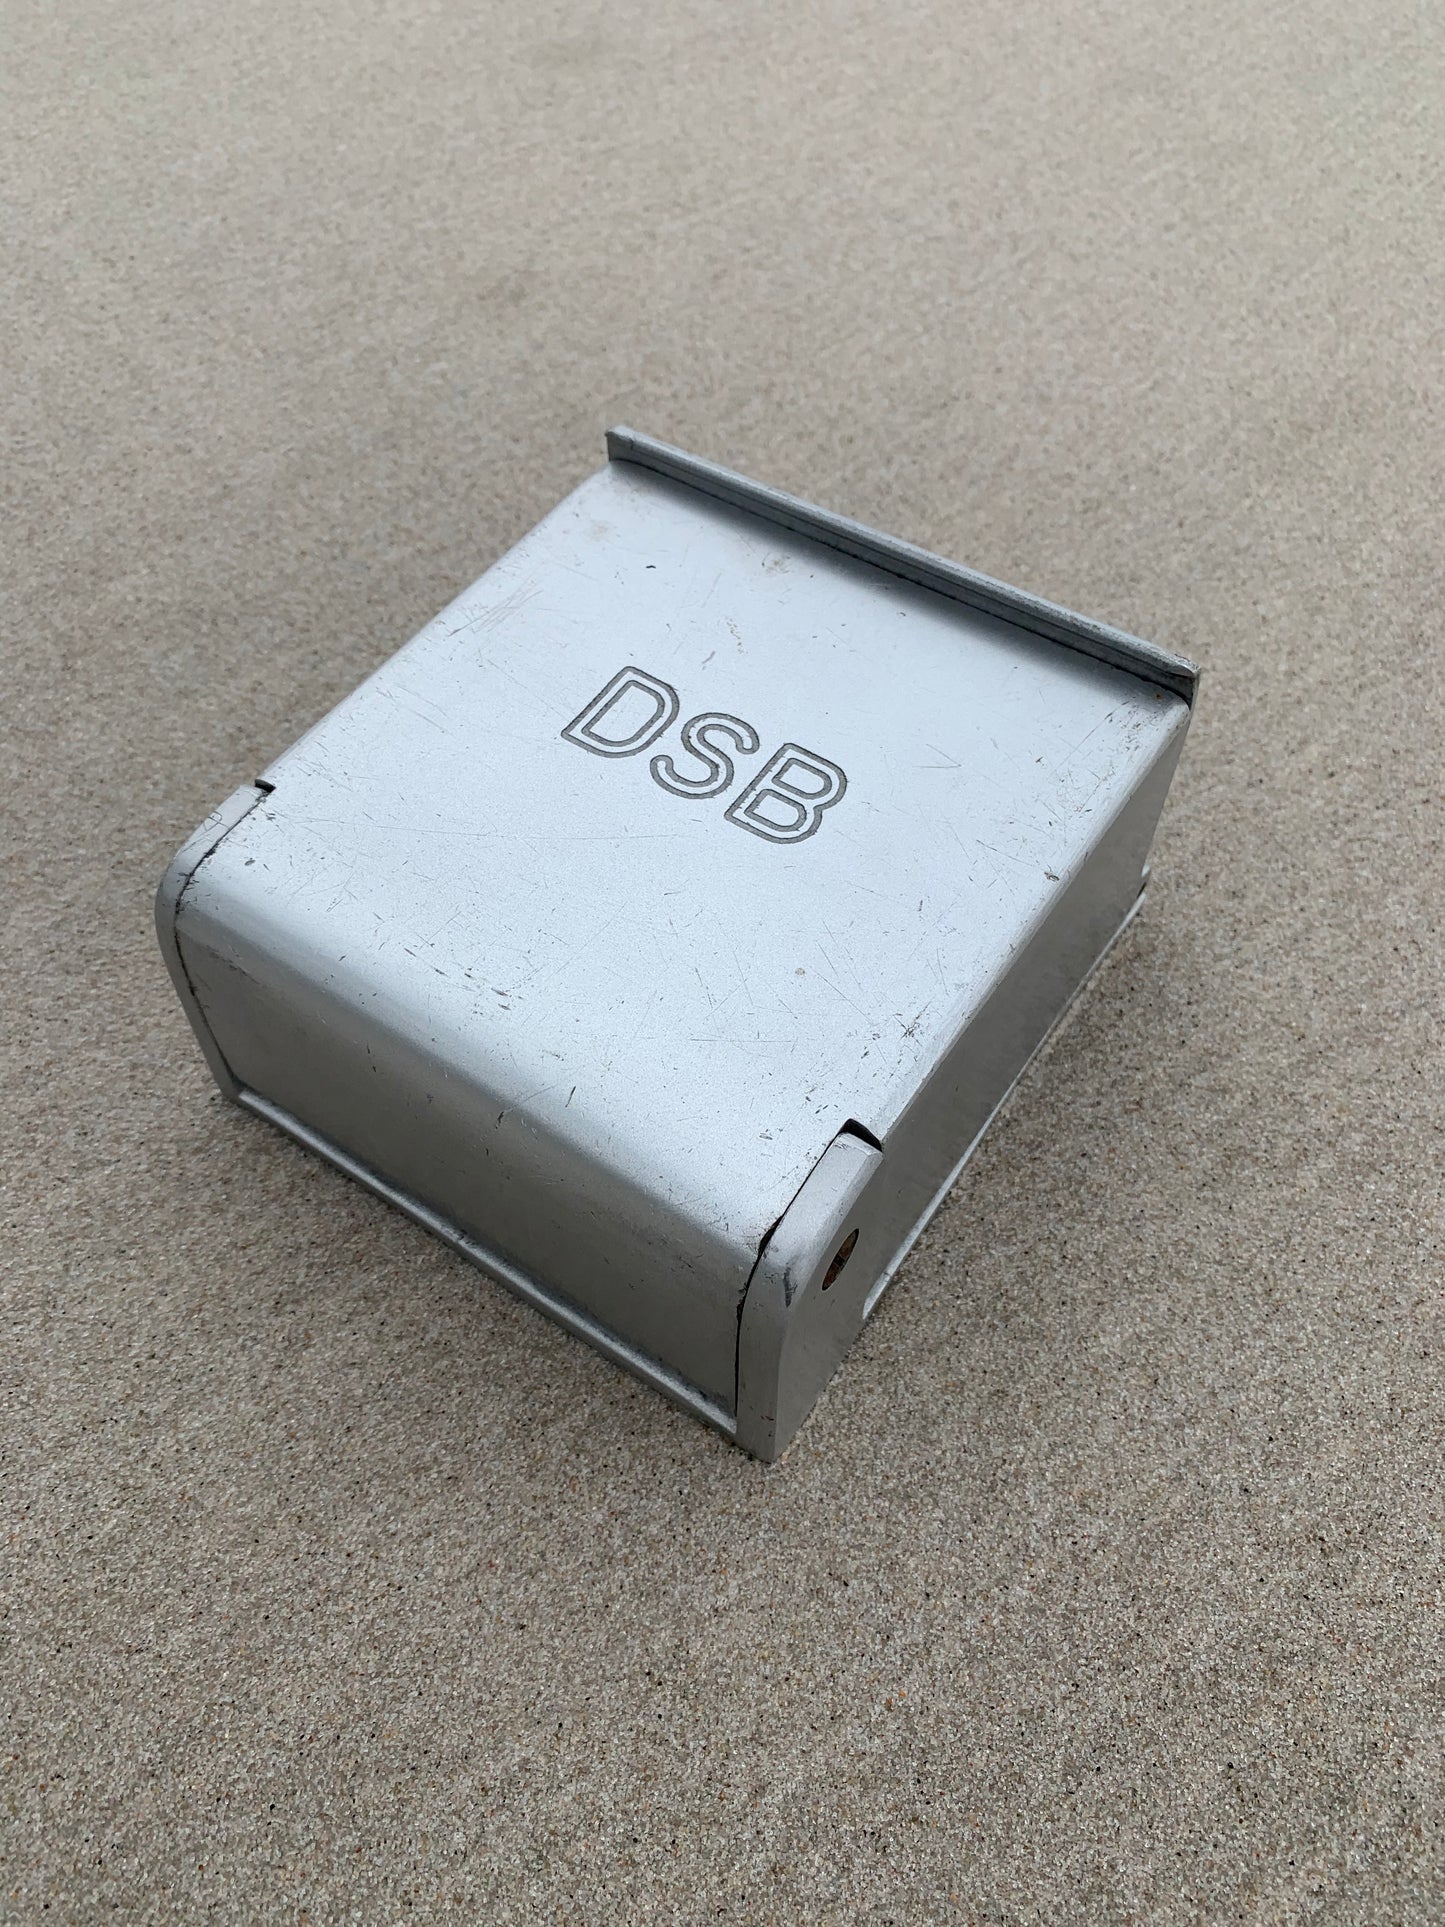 DSB askebæger - Stor model